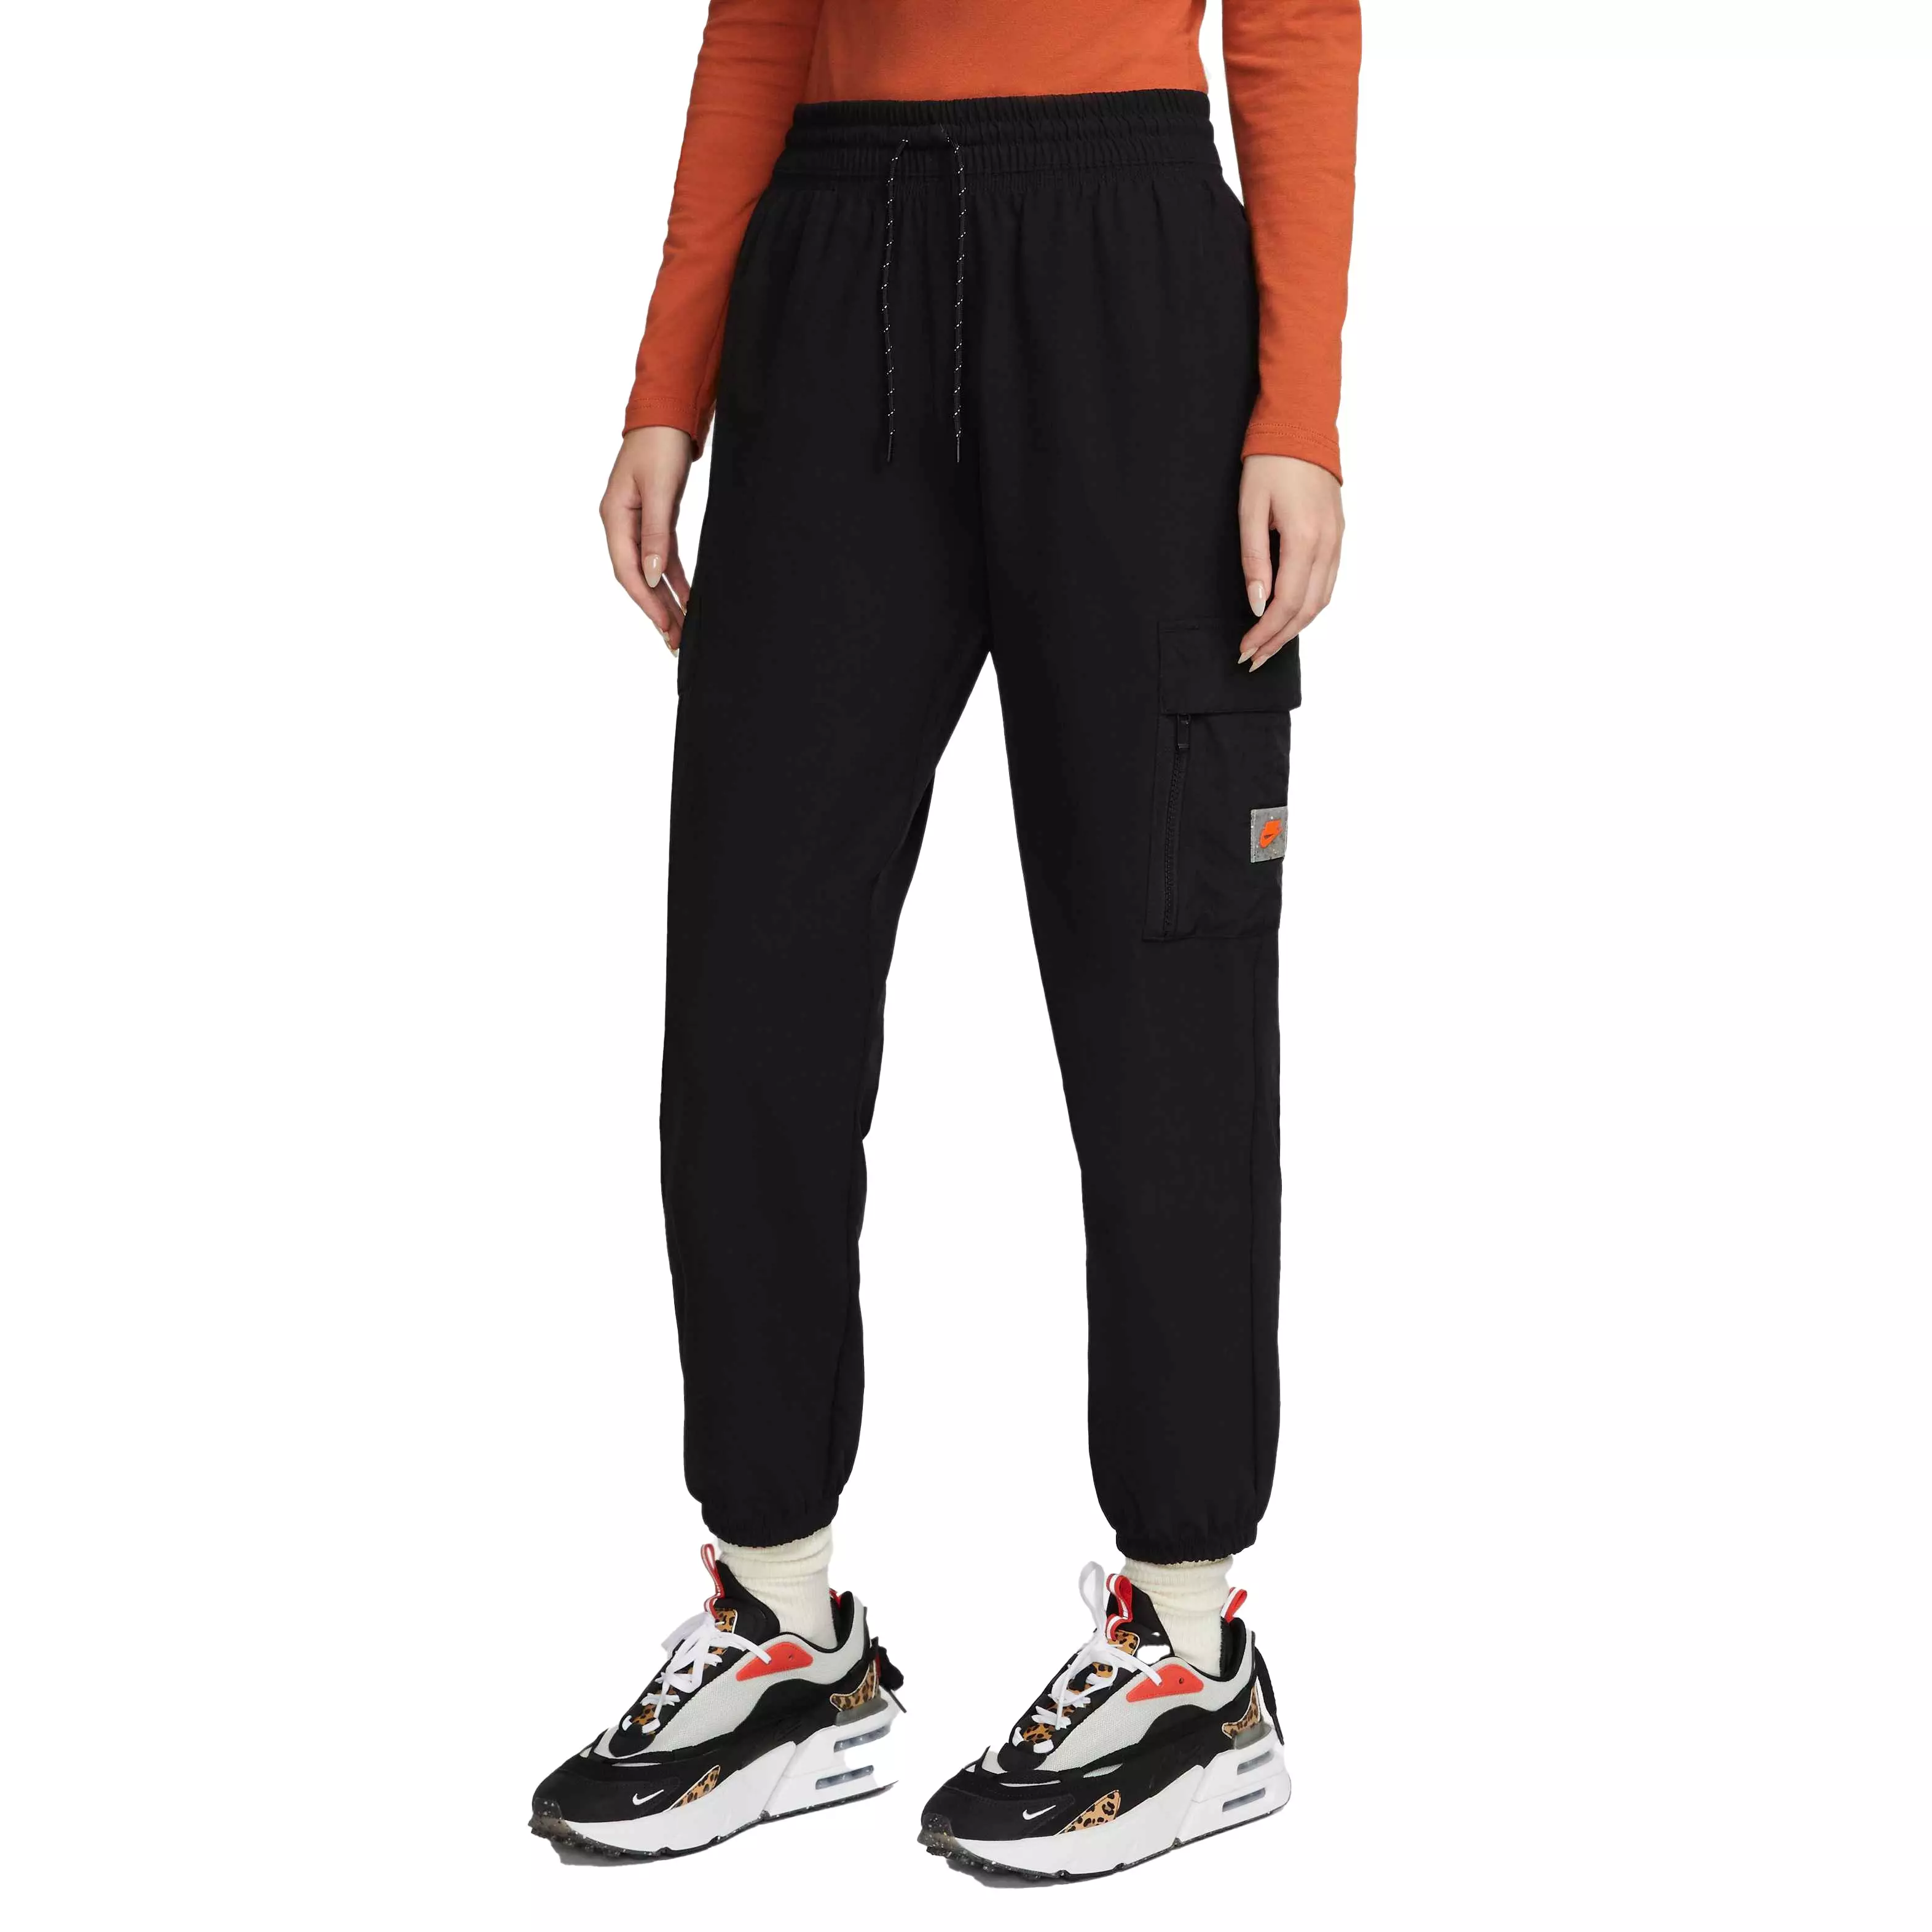 Nike Women's Dri-FIT Get Fit Training Pants - Hibbett